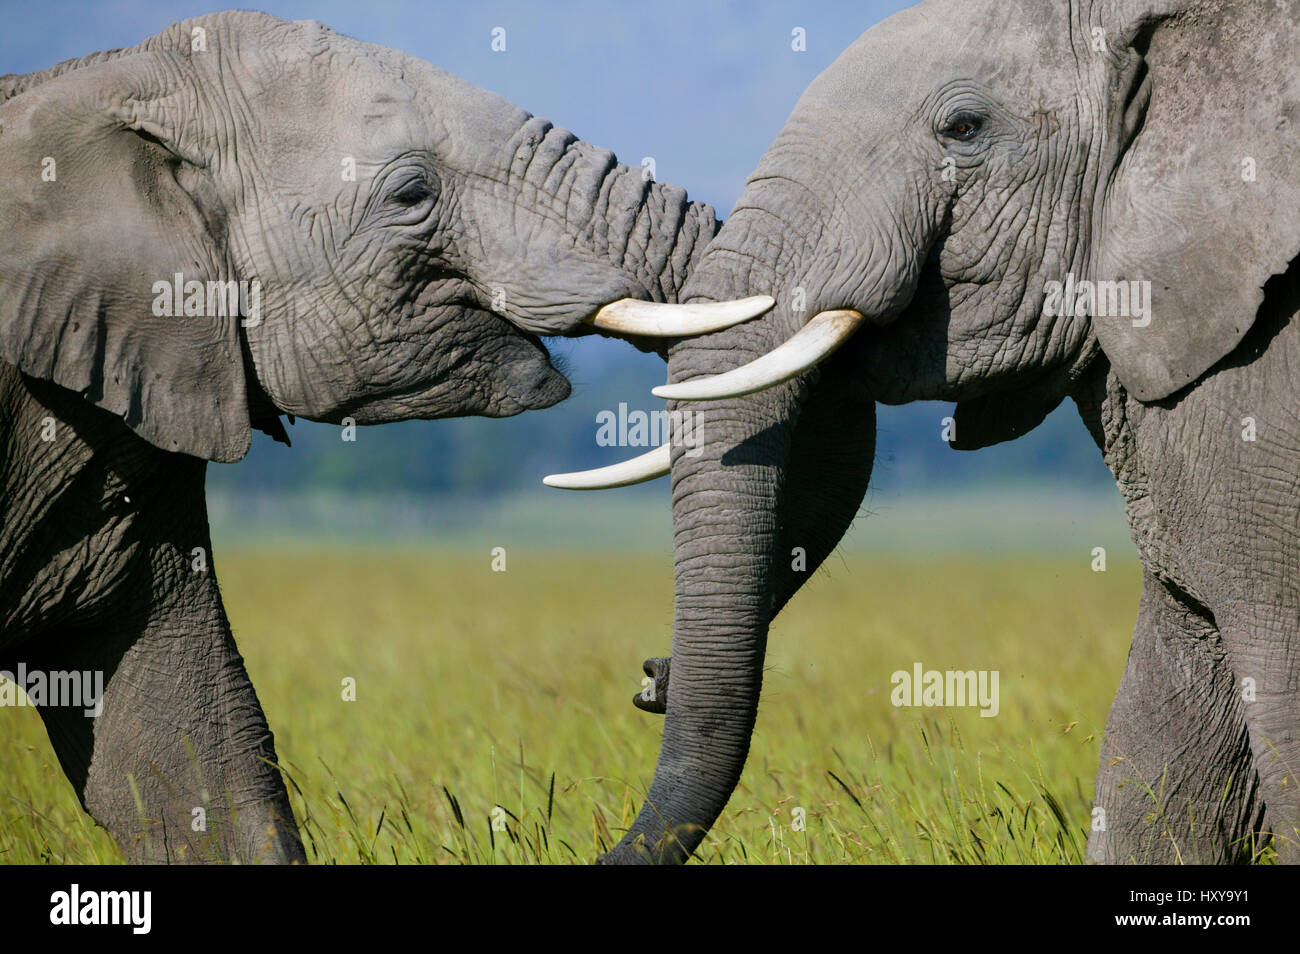 L'éléphant africain (Loxodonta africana), les mâles se battre. Masai-Mara Game Reserve, Kenya. Banque D'Images